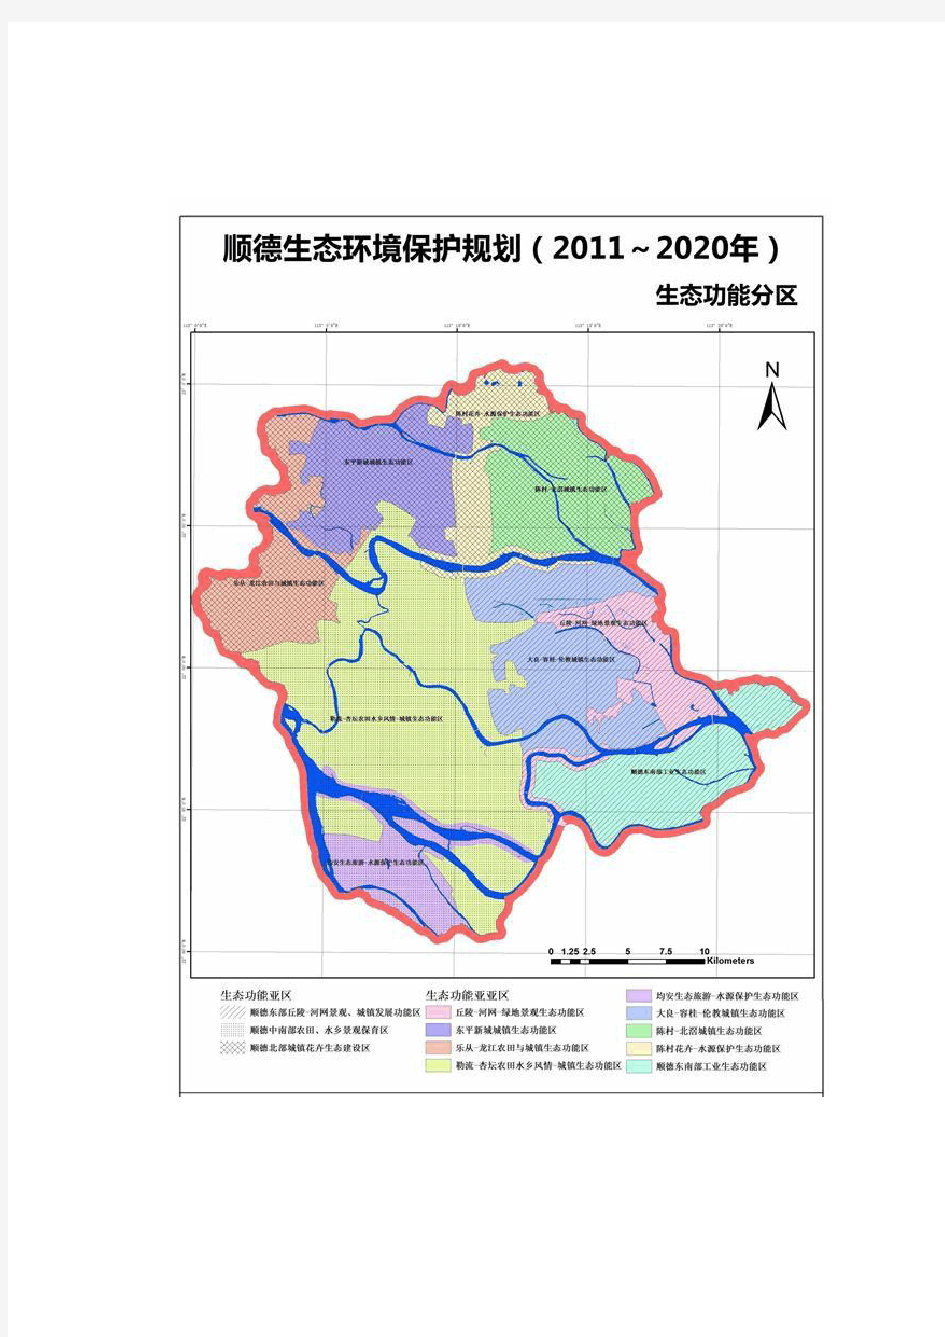 顺德生态环境保护规划(顺德生态功能分区图、广东省珠三角生态图、顺德大气、水、地下水、噪声功能区划图)